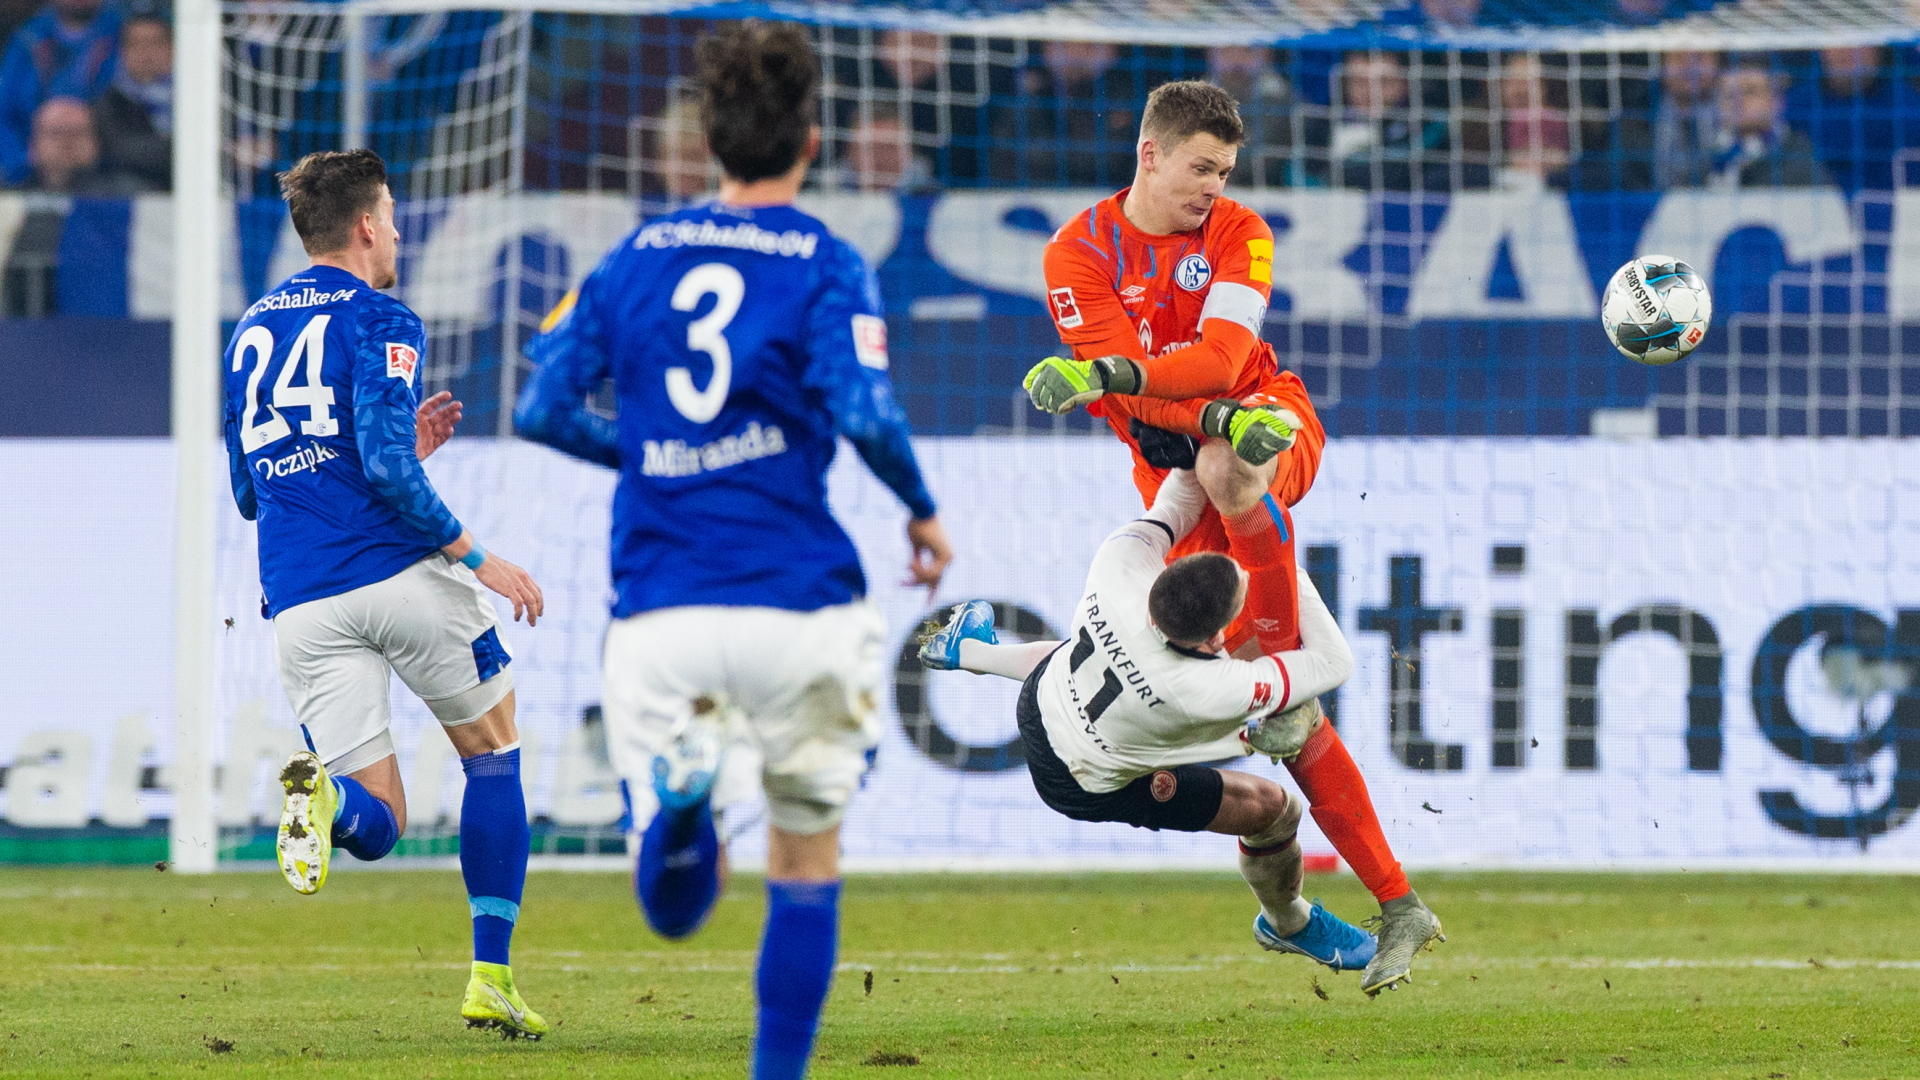 Schalkes Nübel foult Frankfurt Gacinovic und fliegt dafür vom Platz | Bildquelle: dpa